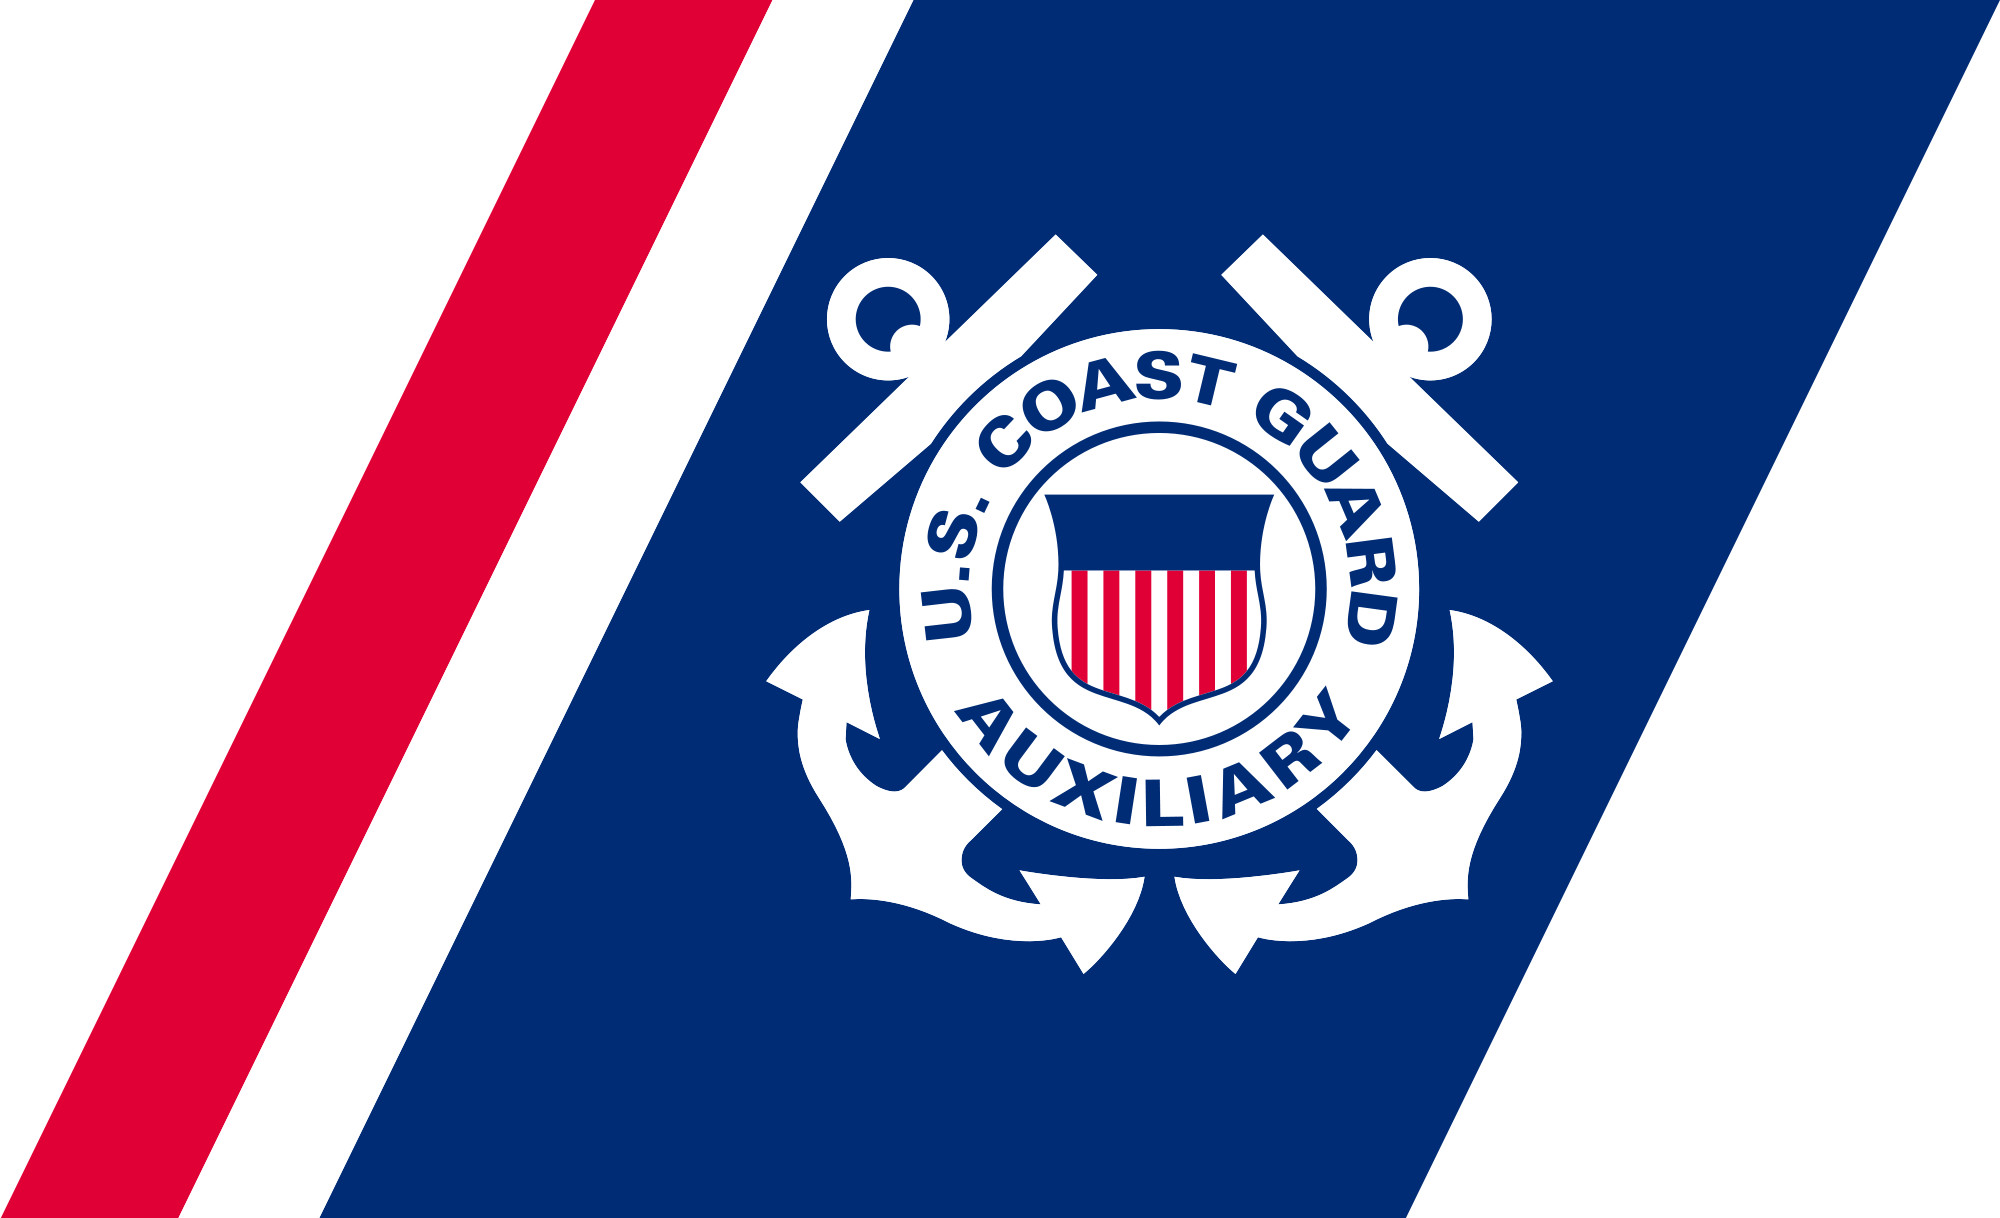 US Coast Guard Wallpaper (67+ images)